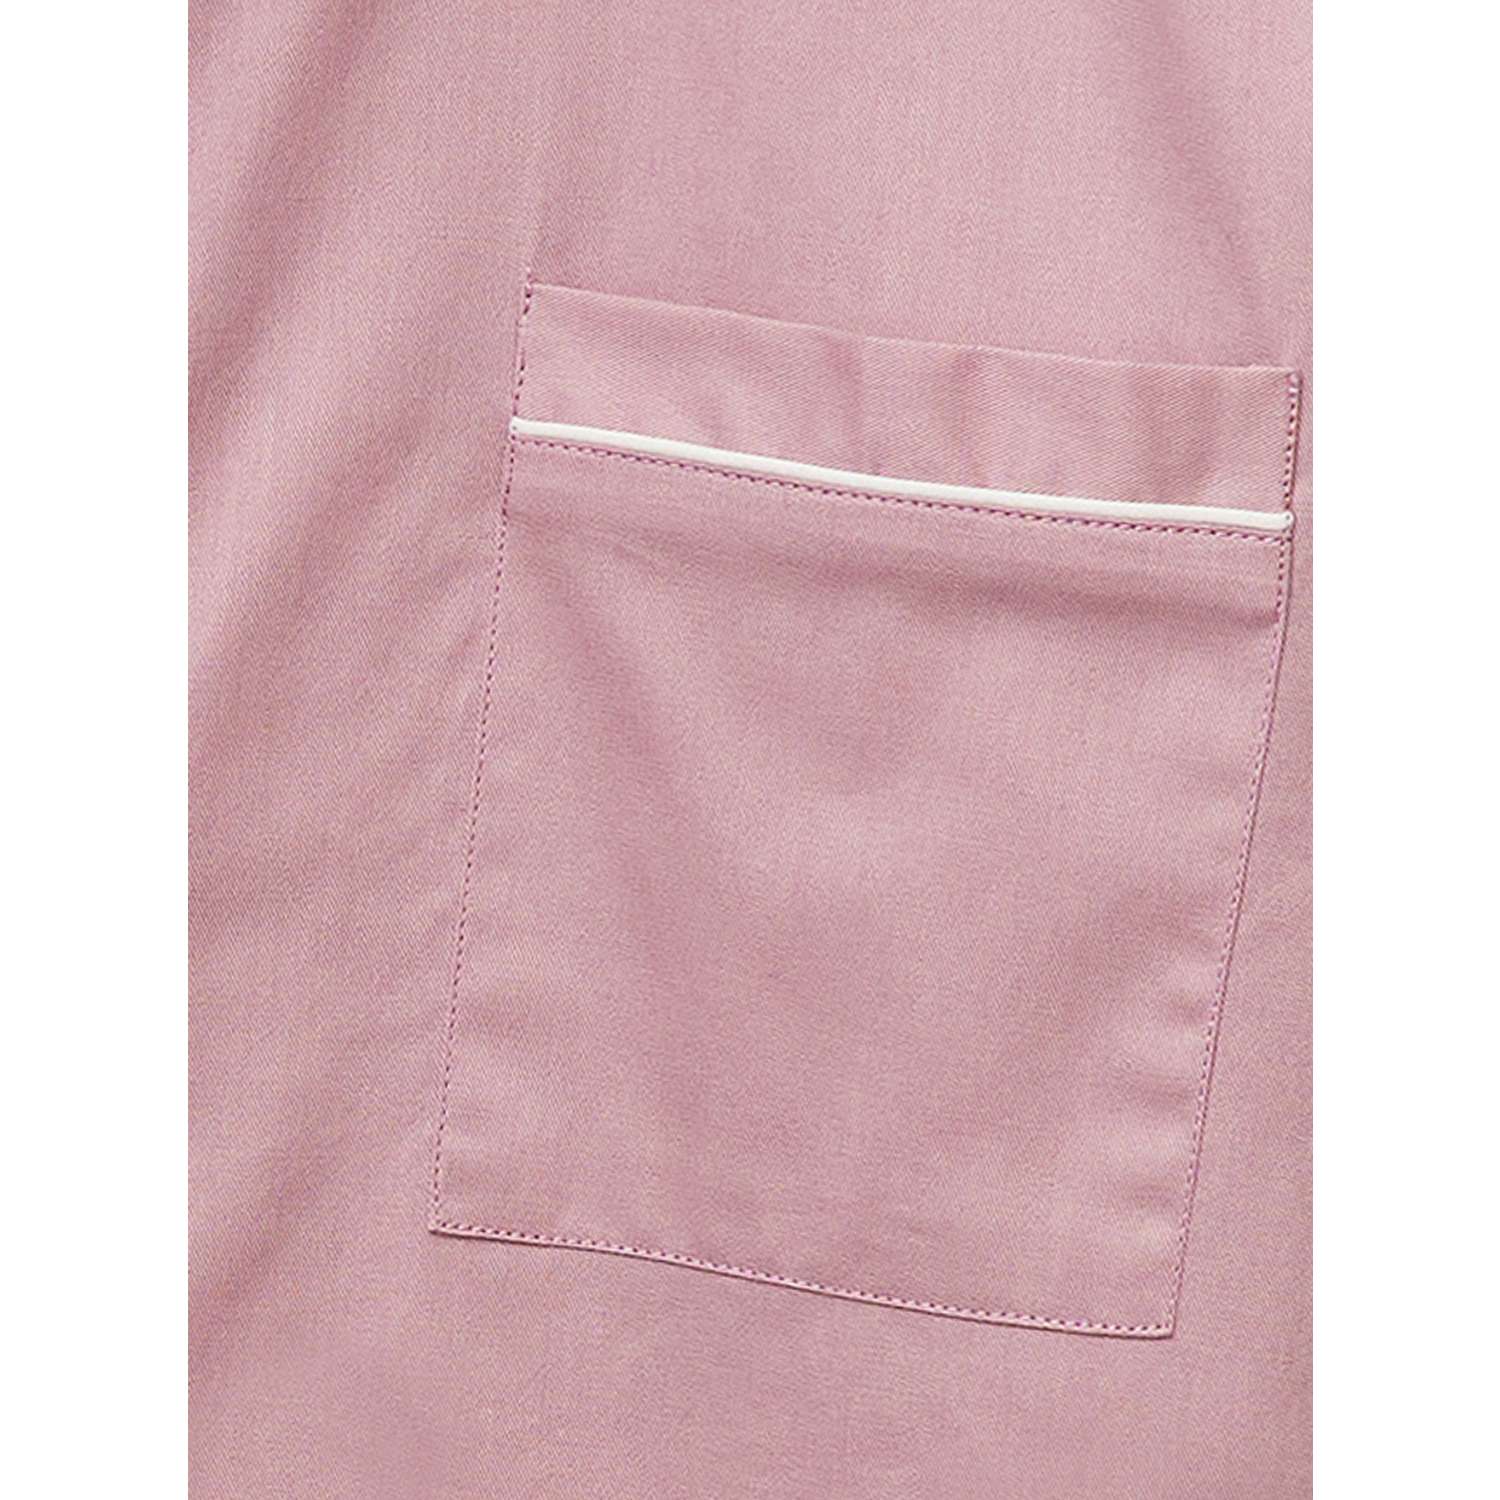 Пижама Frutto Rosso FRH146/Пыльно-розовый - фото 5